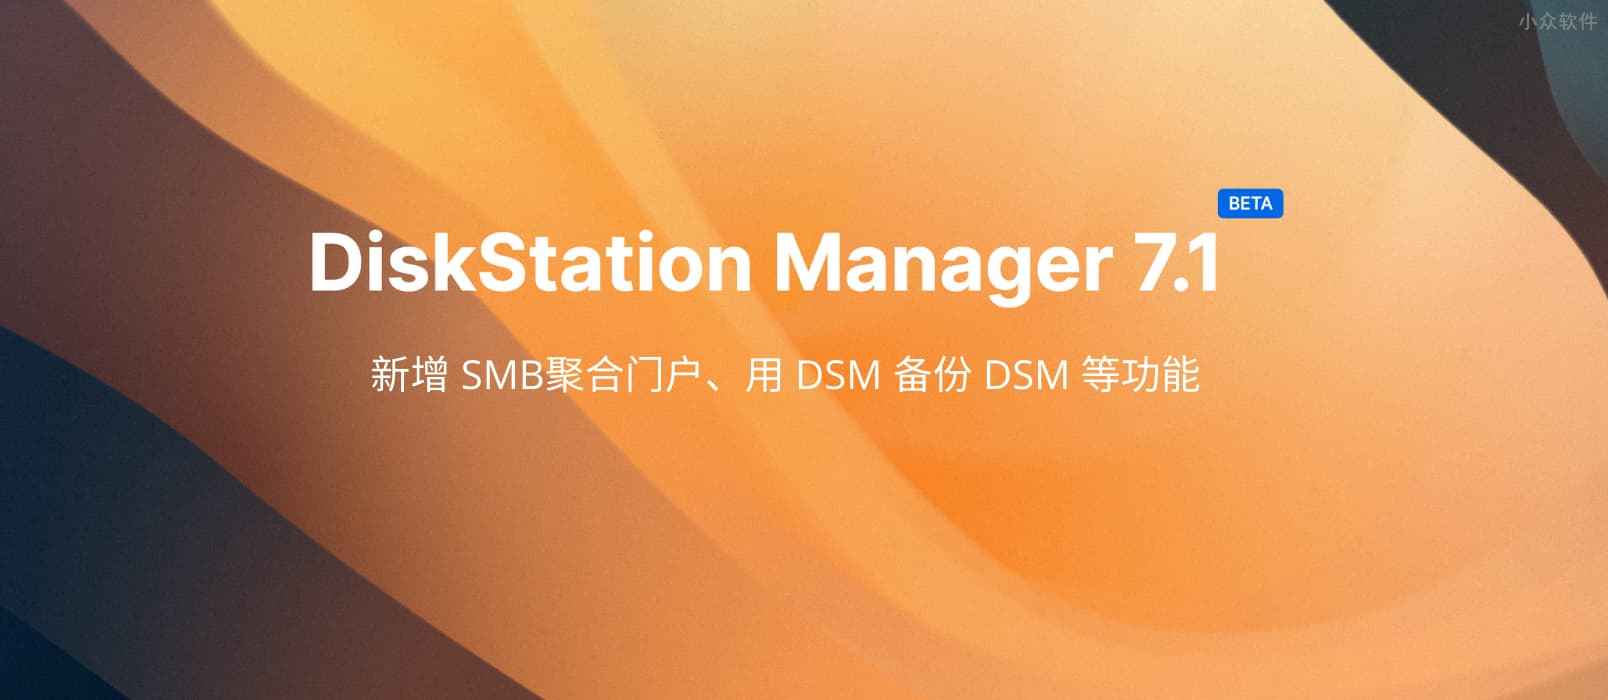 群晖 DSM 7.1 公测，新增 SMB聚合门户、用 DSM 备份 DSM 等功能